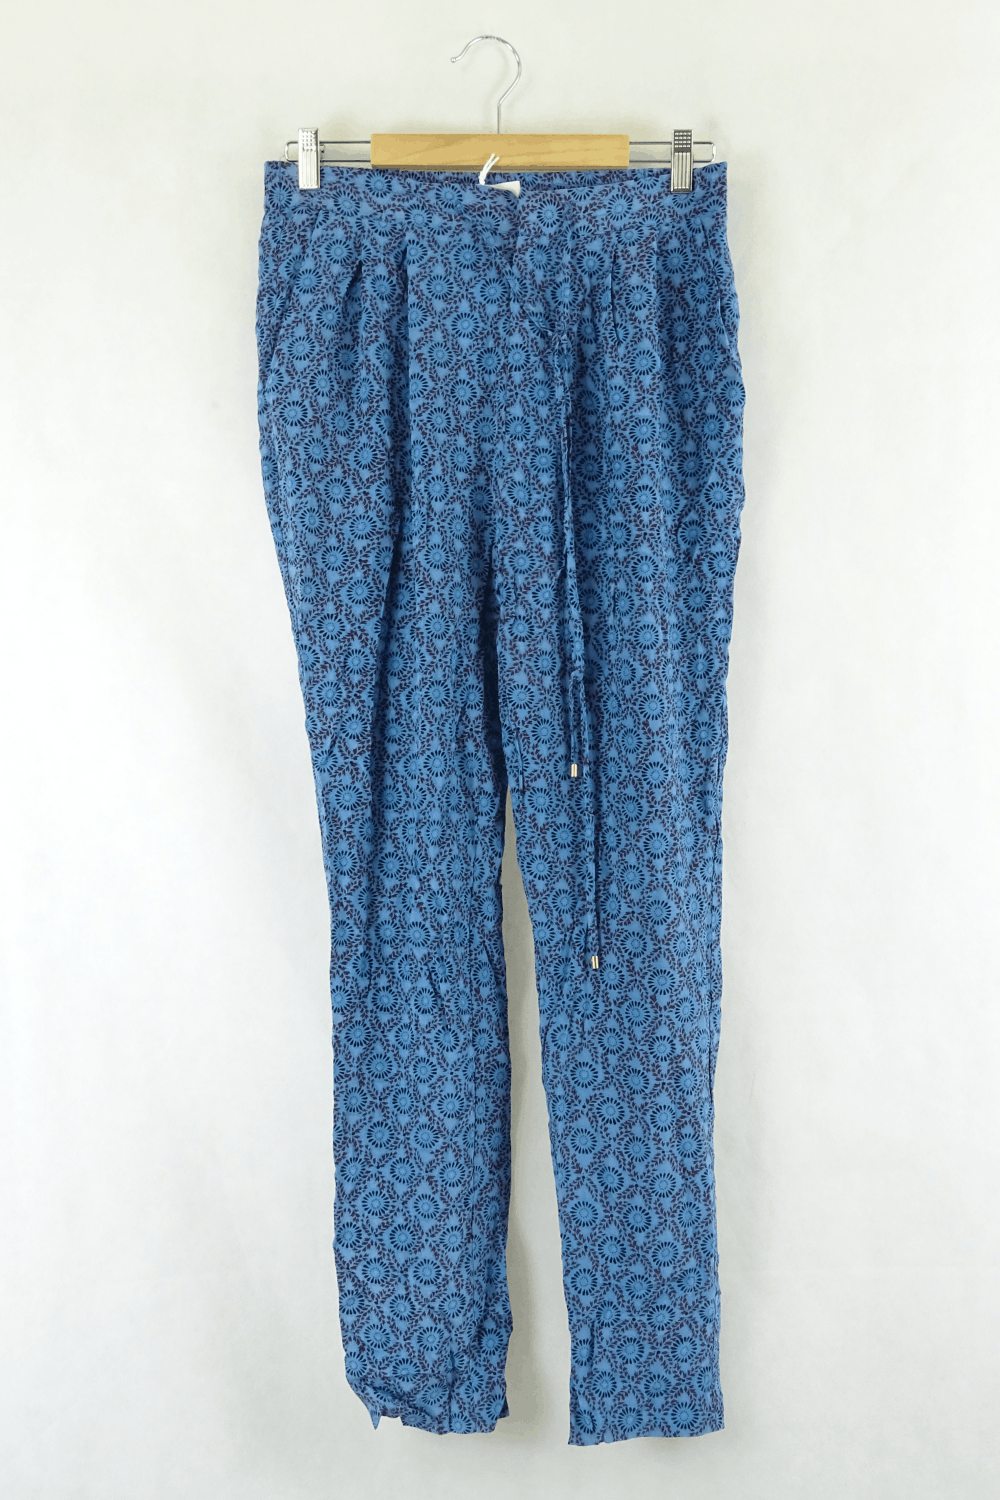 Derek Lam Blue Floral Pants S